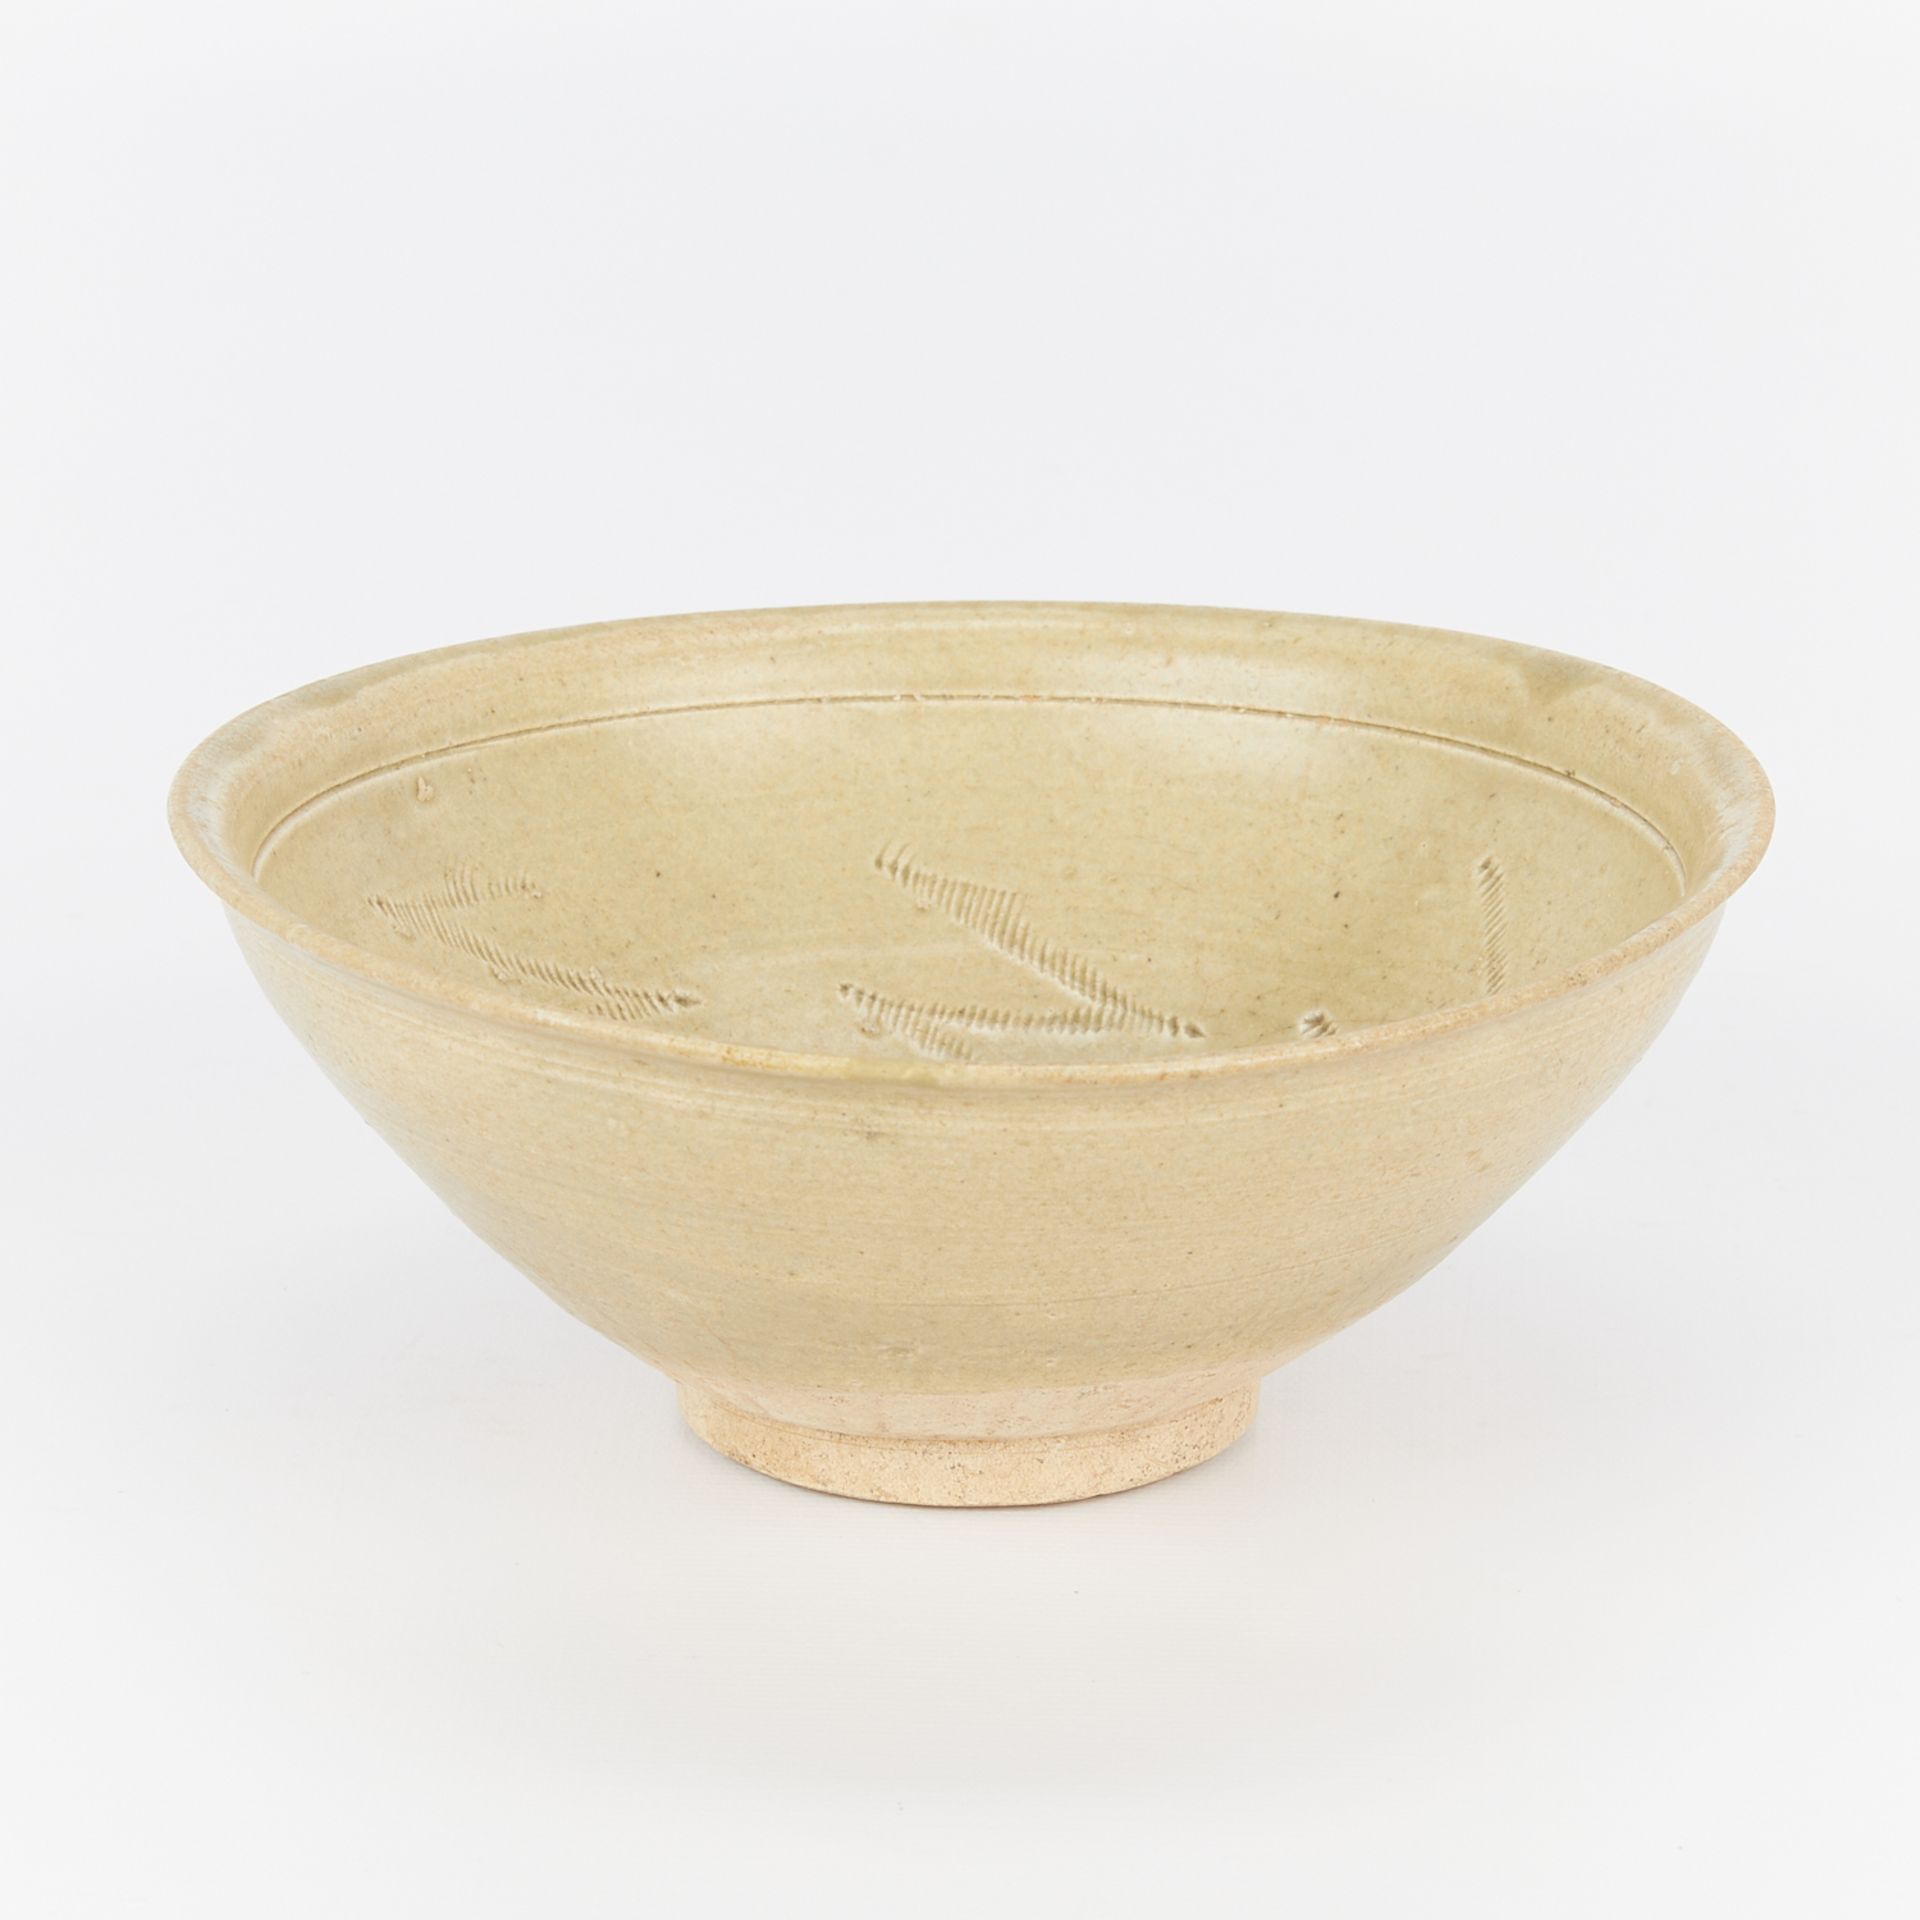 Chinese Song Celadon Glazed Ceramic Bowl - Image 5 of 8